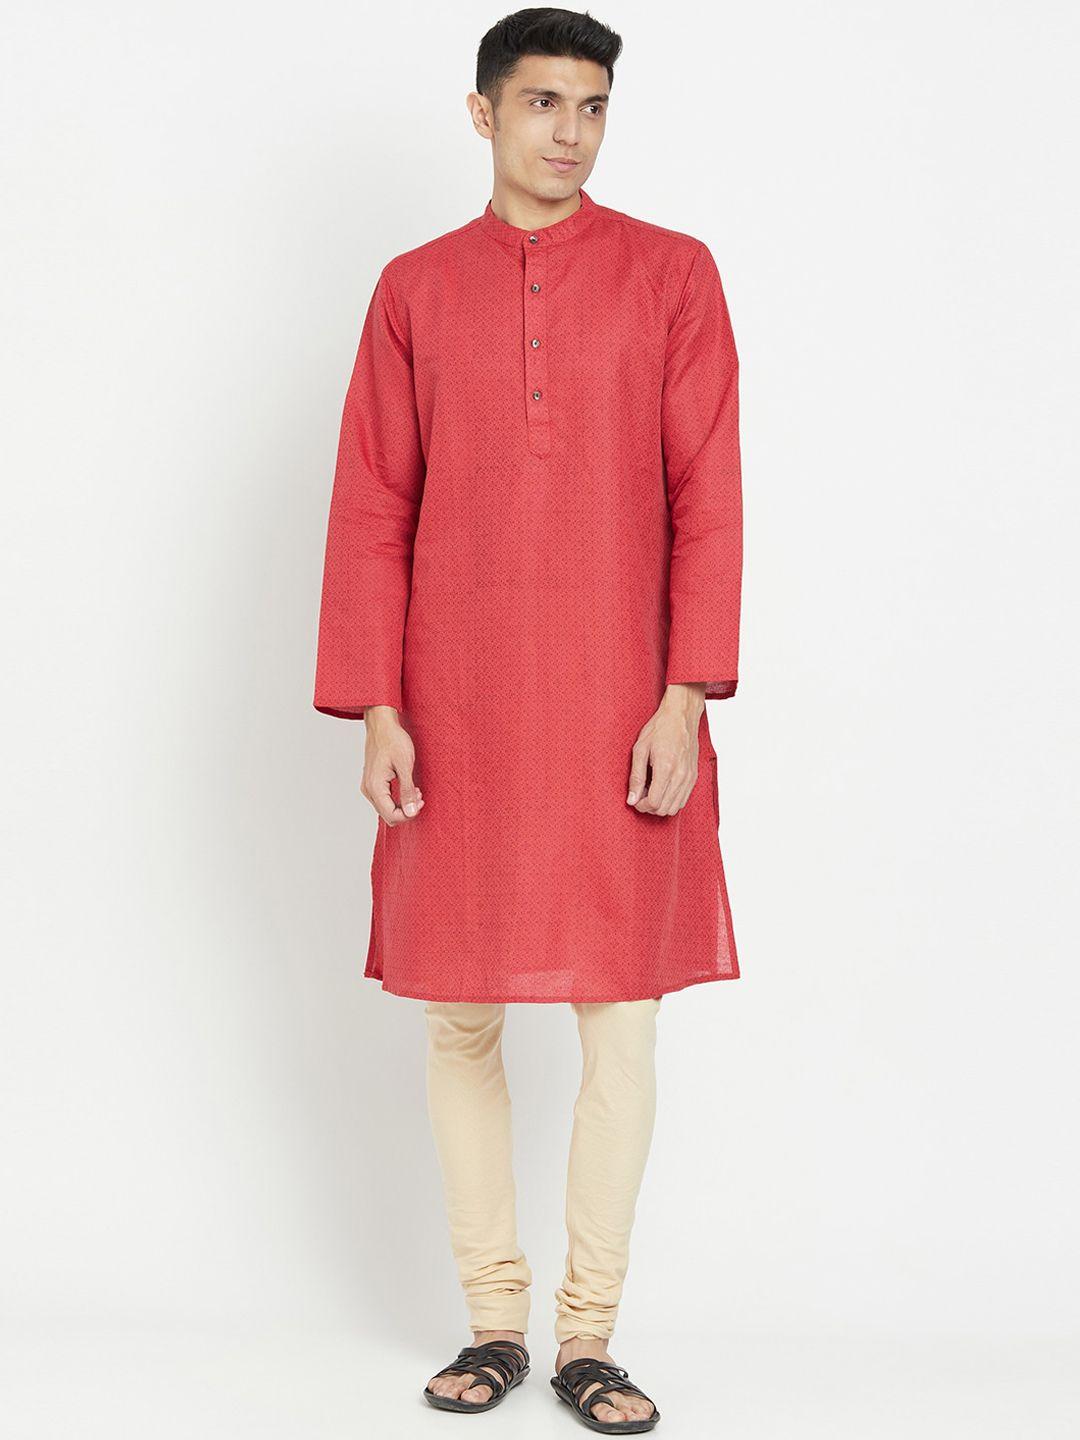 fabindia men red ethnic motifs printed kurta